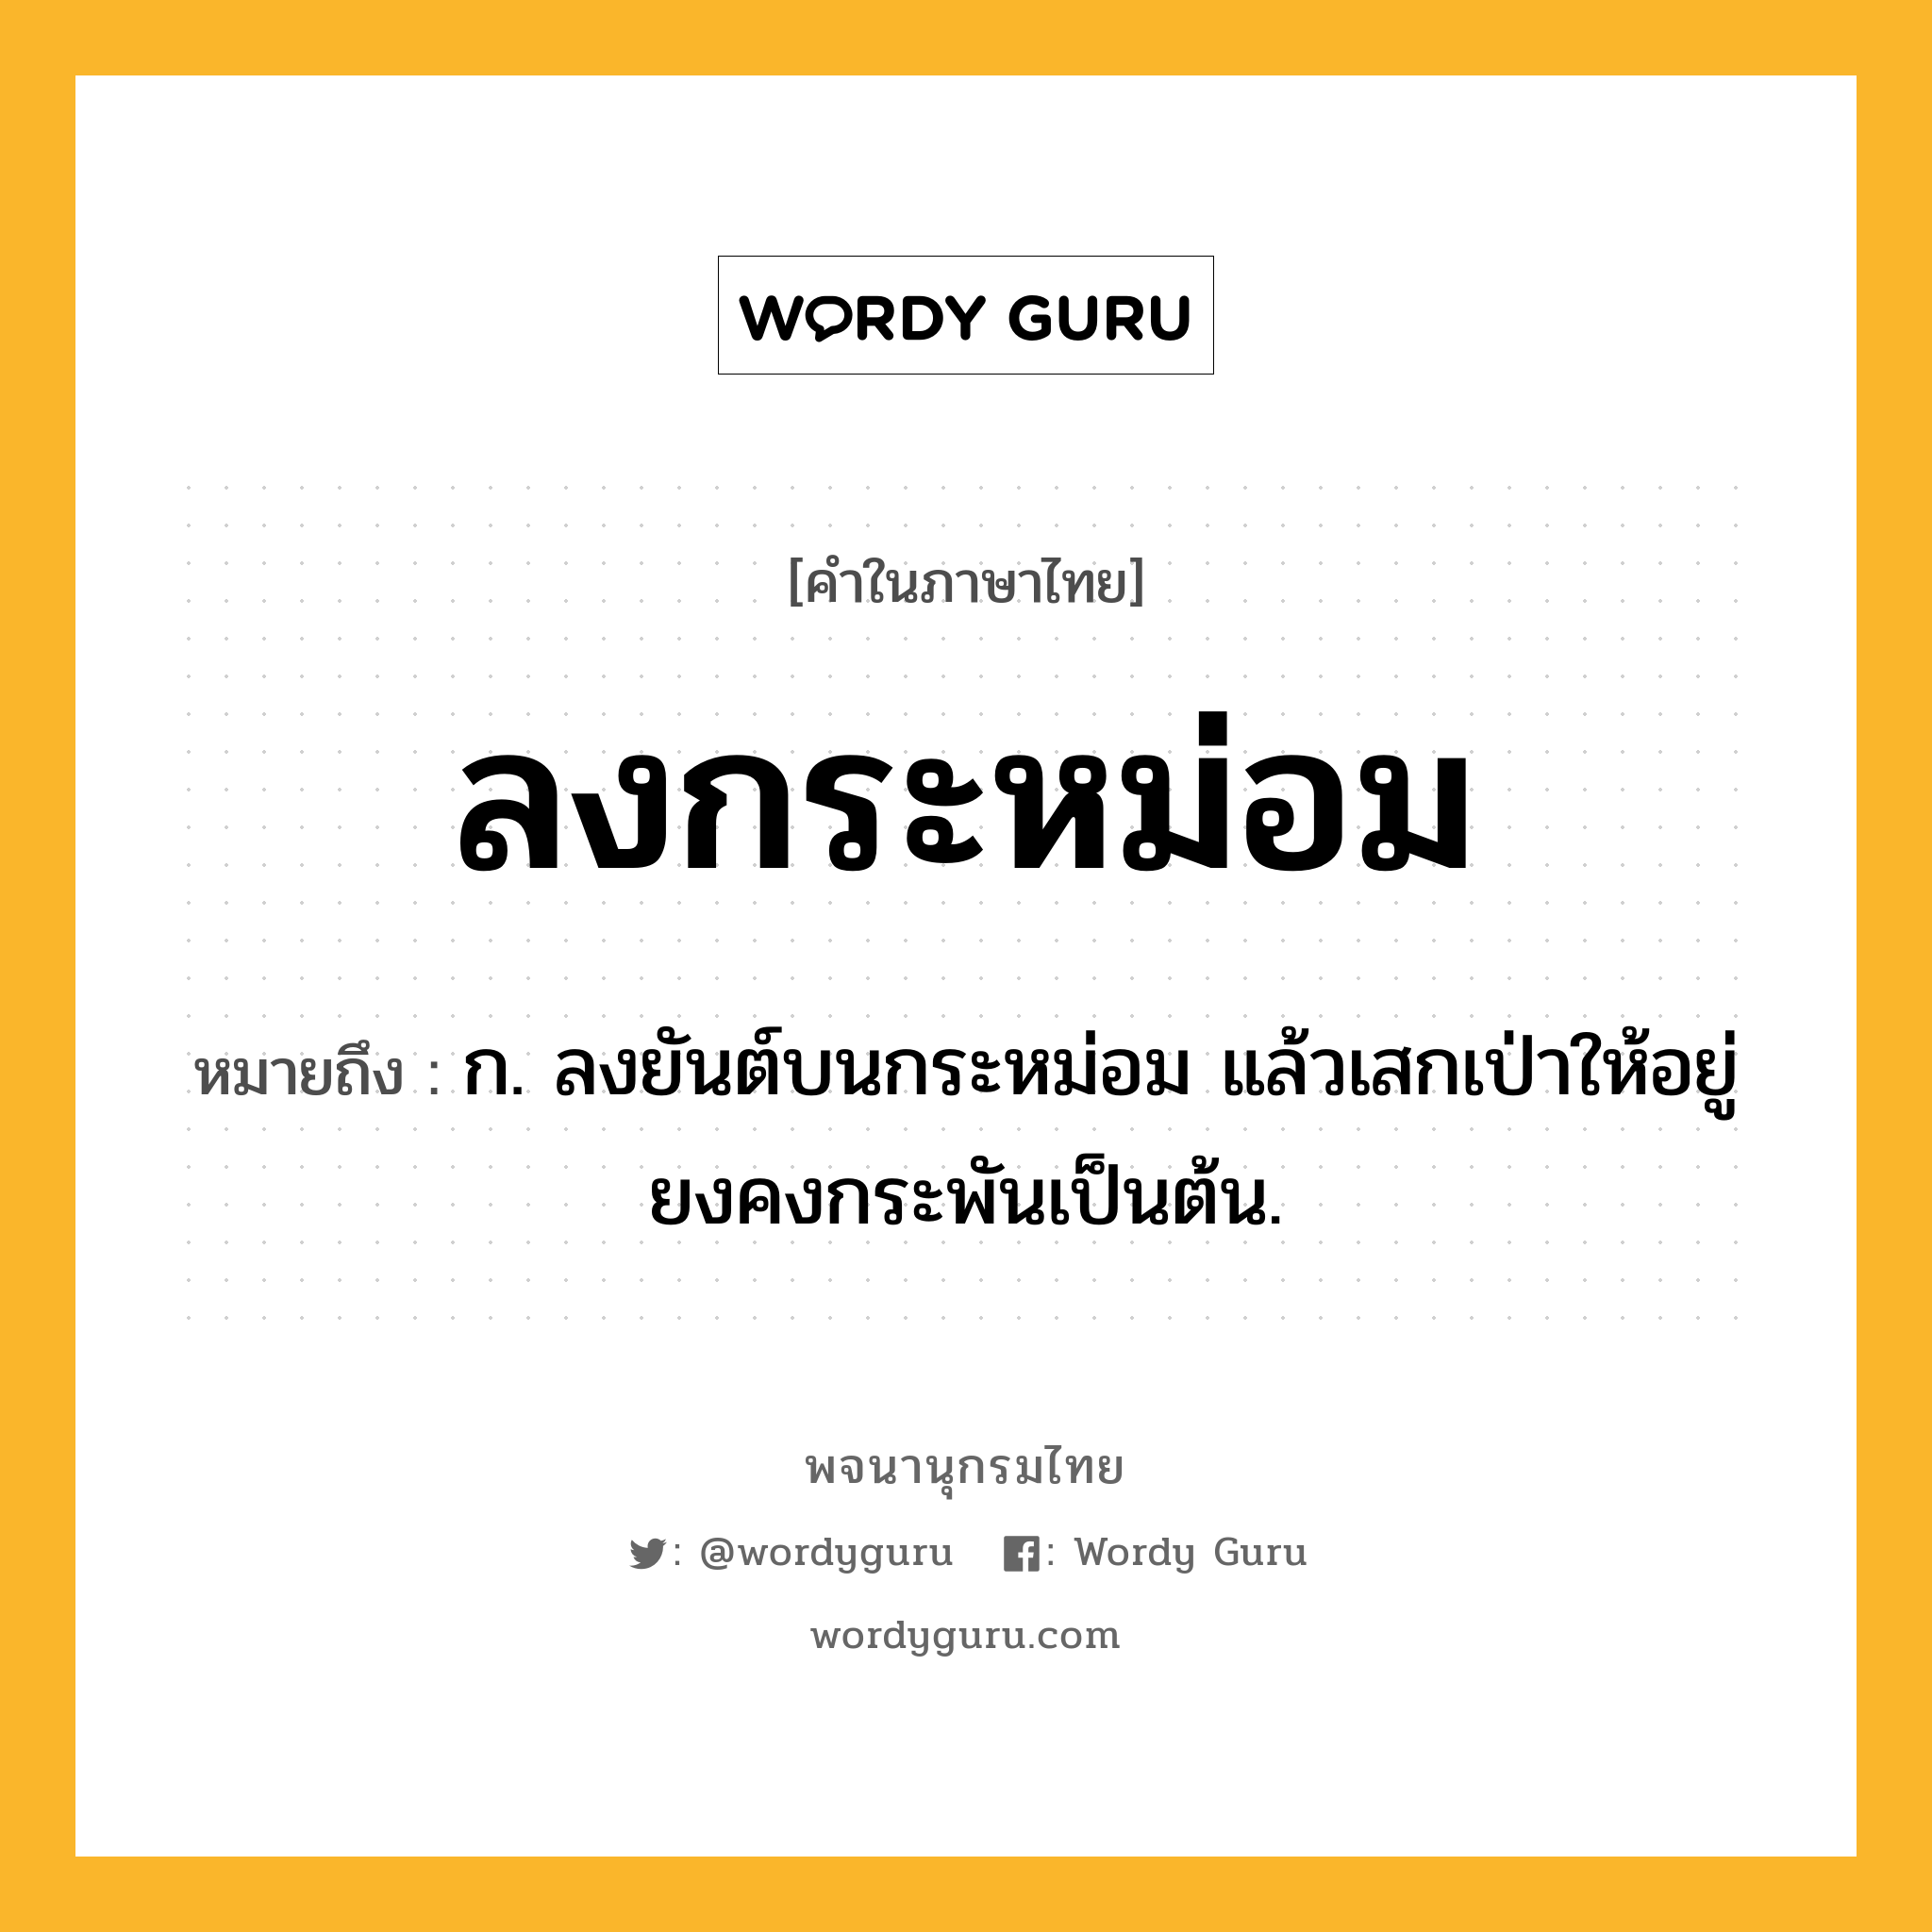 ลงกระหม่อม ความหมาย หมายถึงอะไร?, คำในภาษาไทย ลงกระหม่อม หมายถึง ก. ลงยันต์บนกระหม่อม แล้วเสกเป่าให้อยู่ยงคงกระพันเป็นต้น.